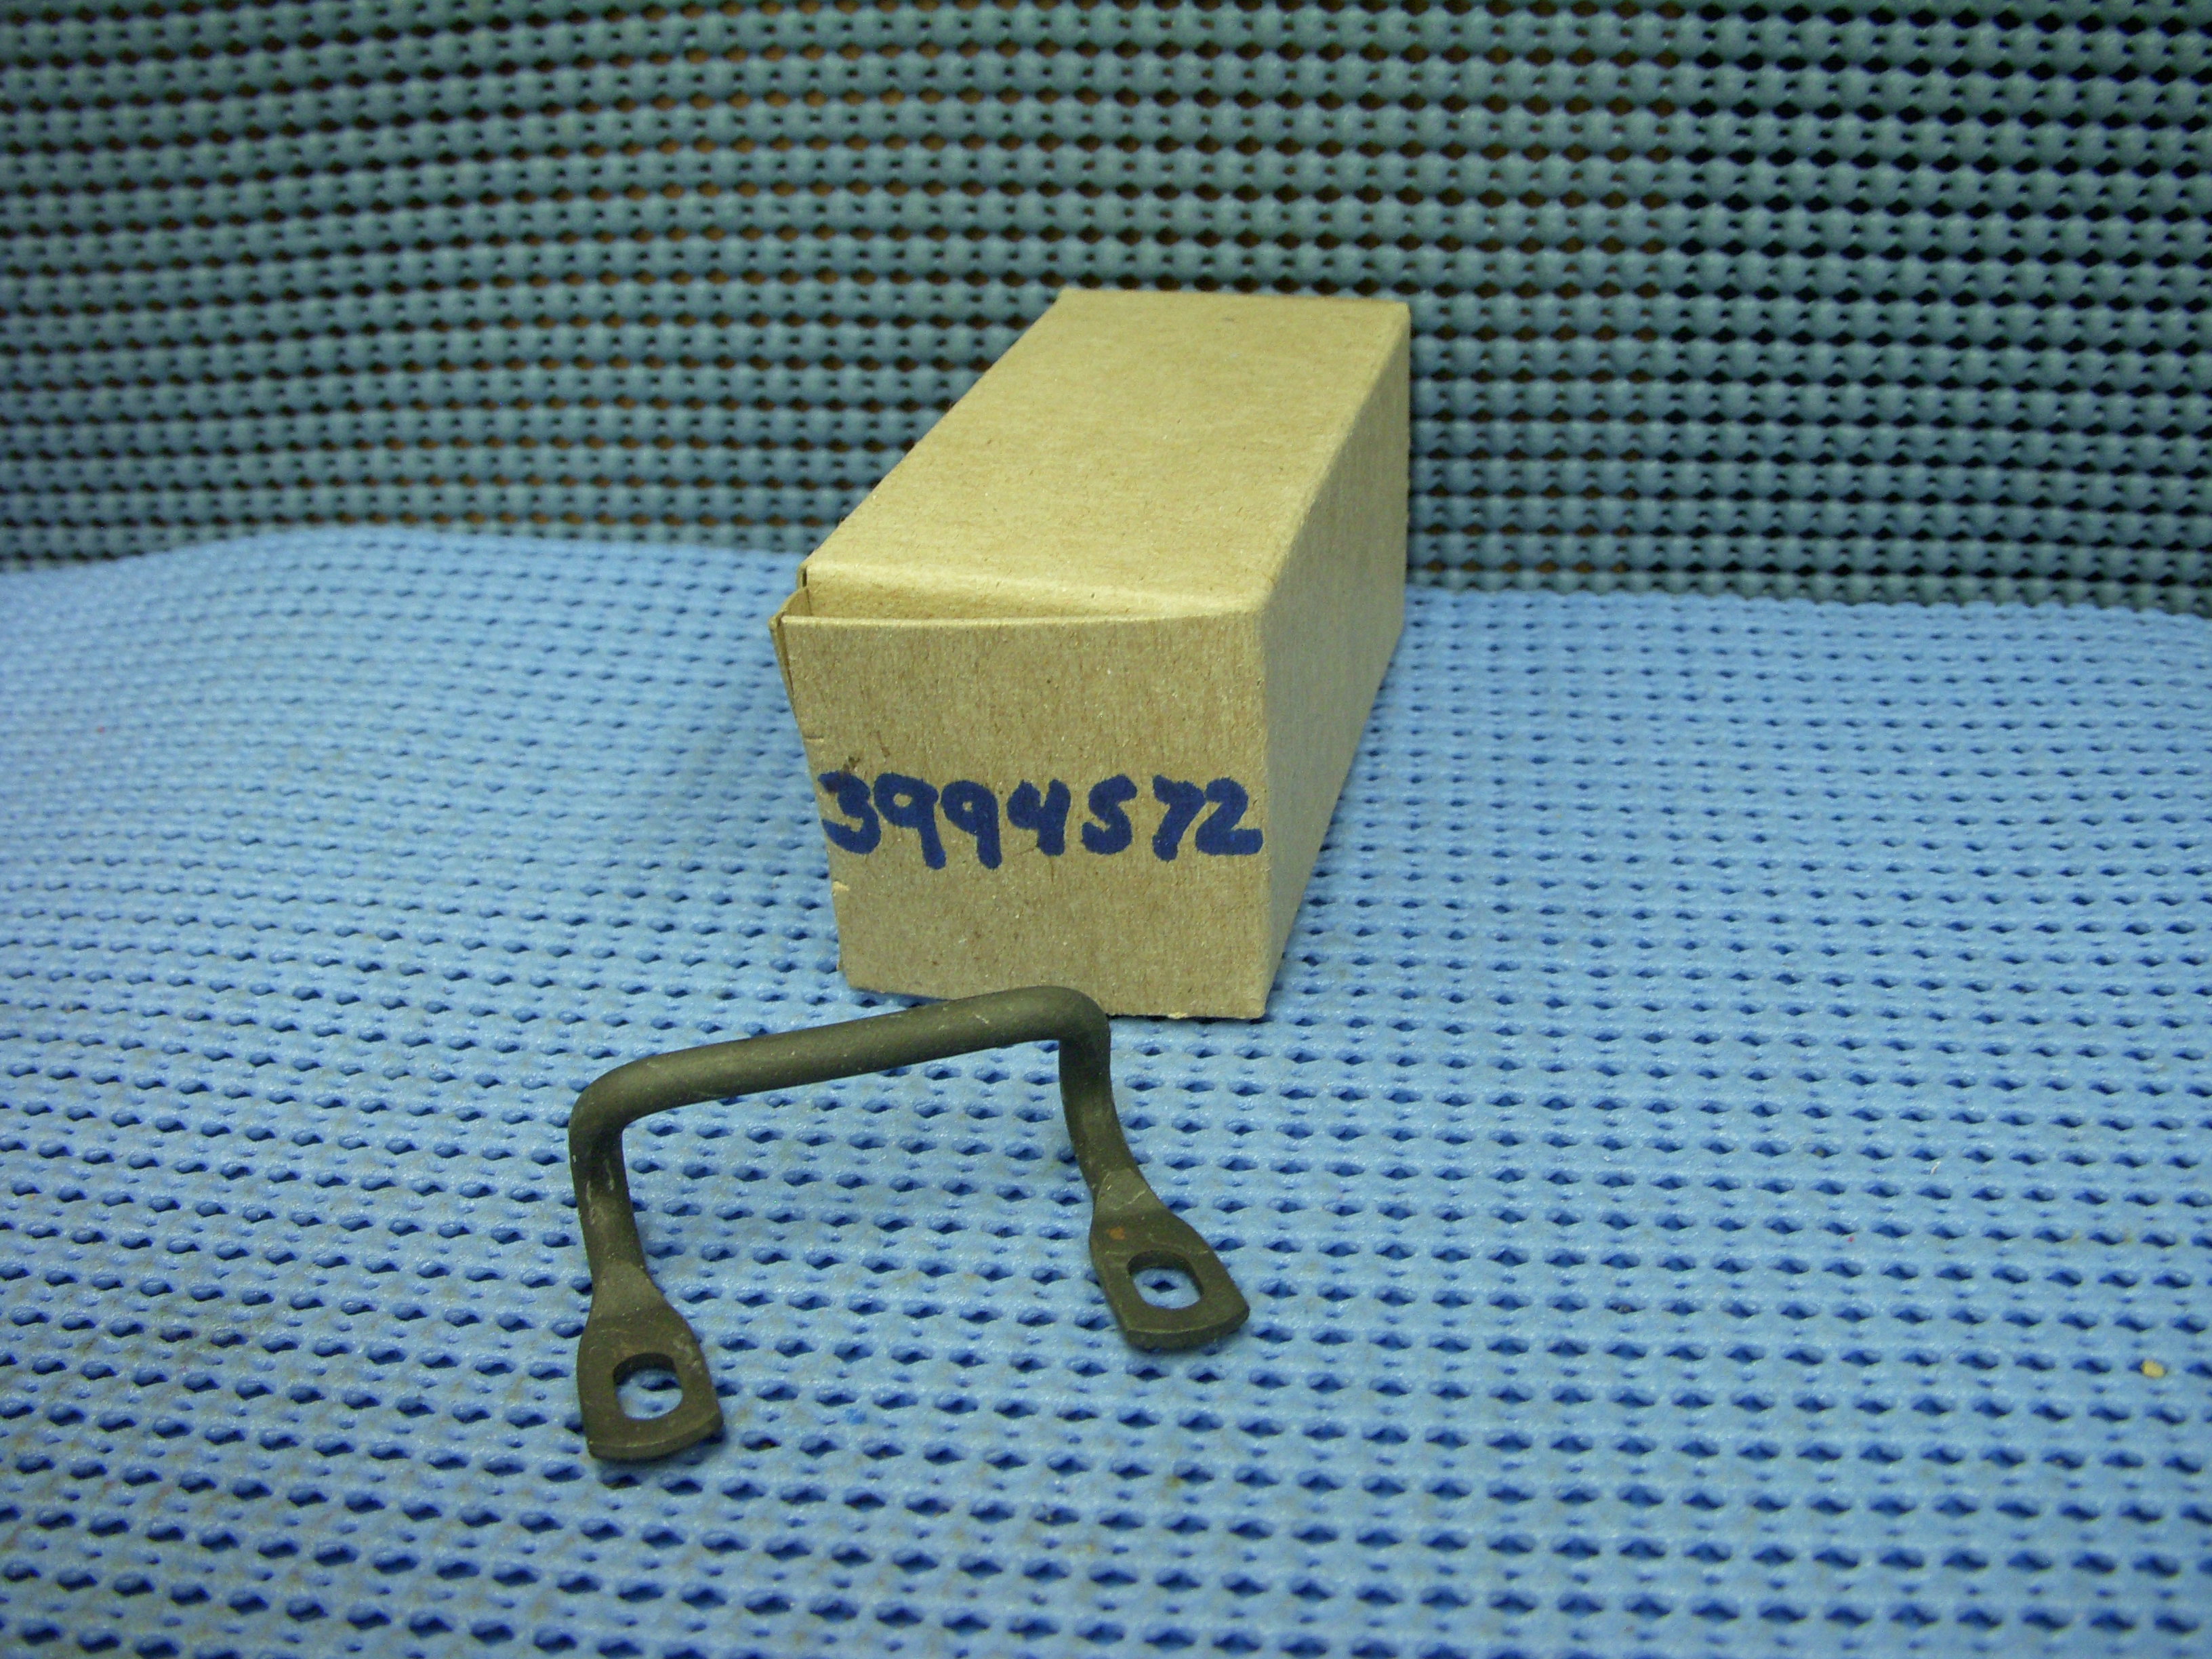 1972 - 1975 Chevrolet Glove Box Lock Striker NOS # 3994572